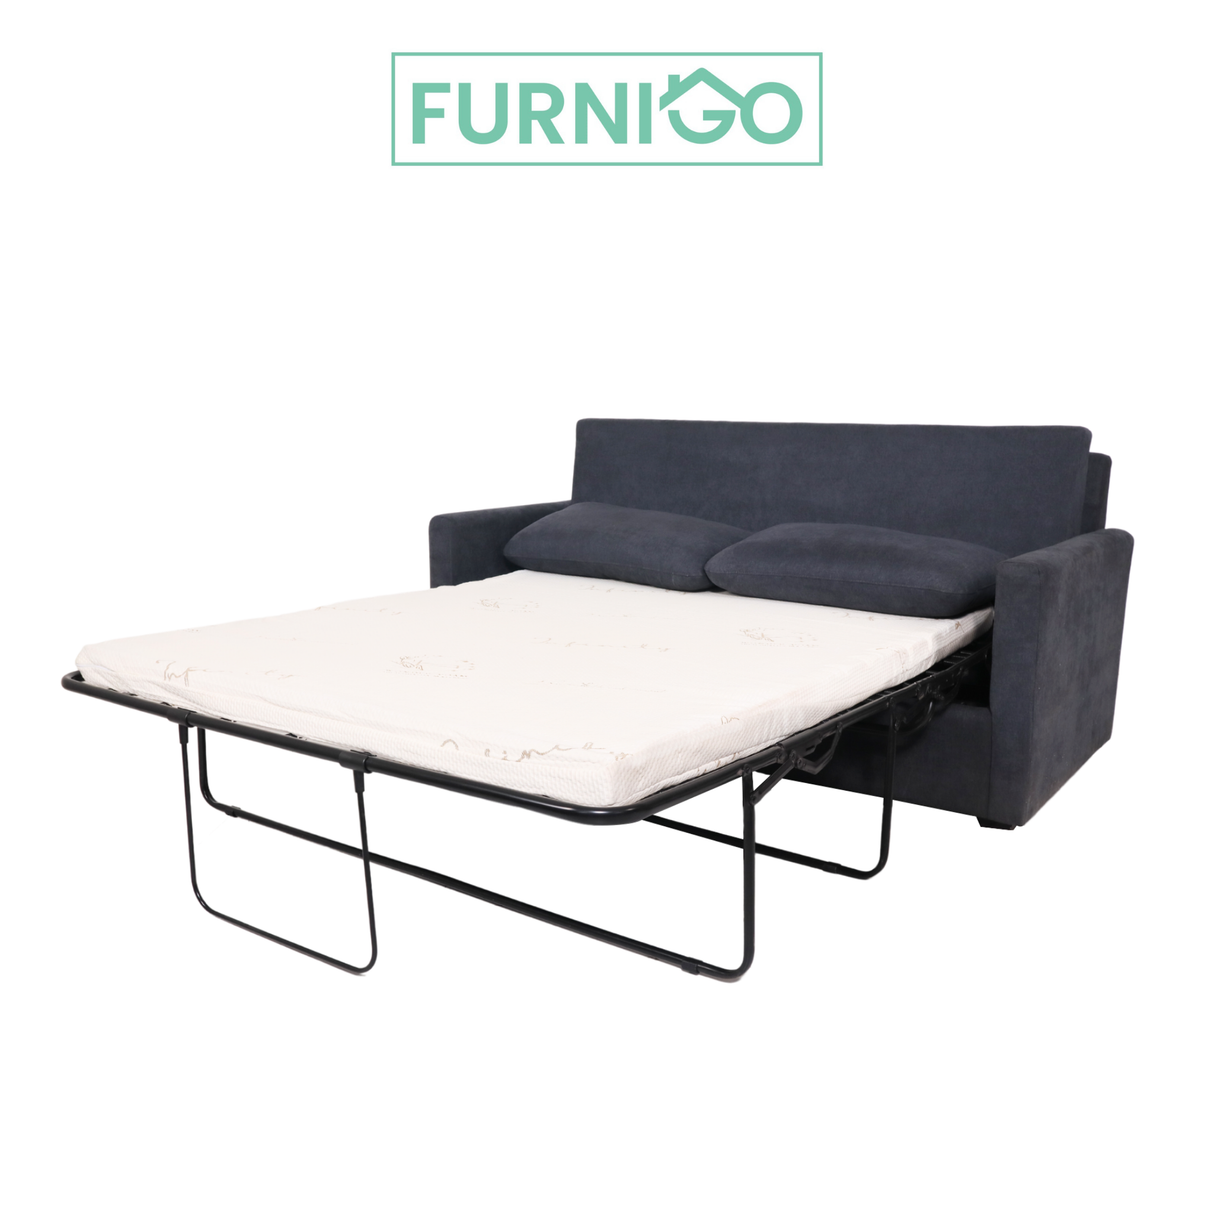 ARMANDO Sofa Bed Furnigo